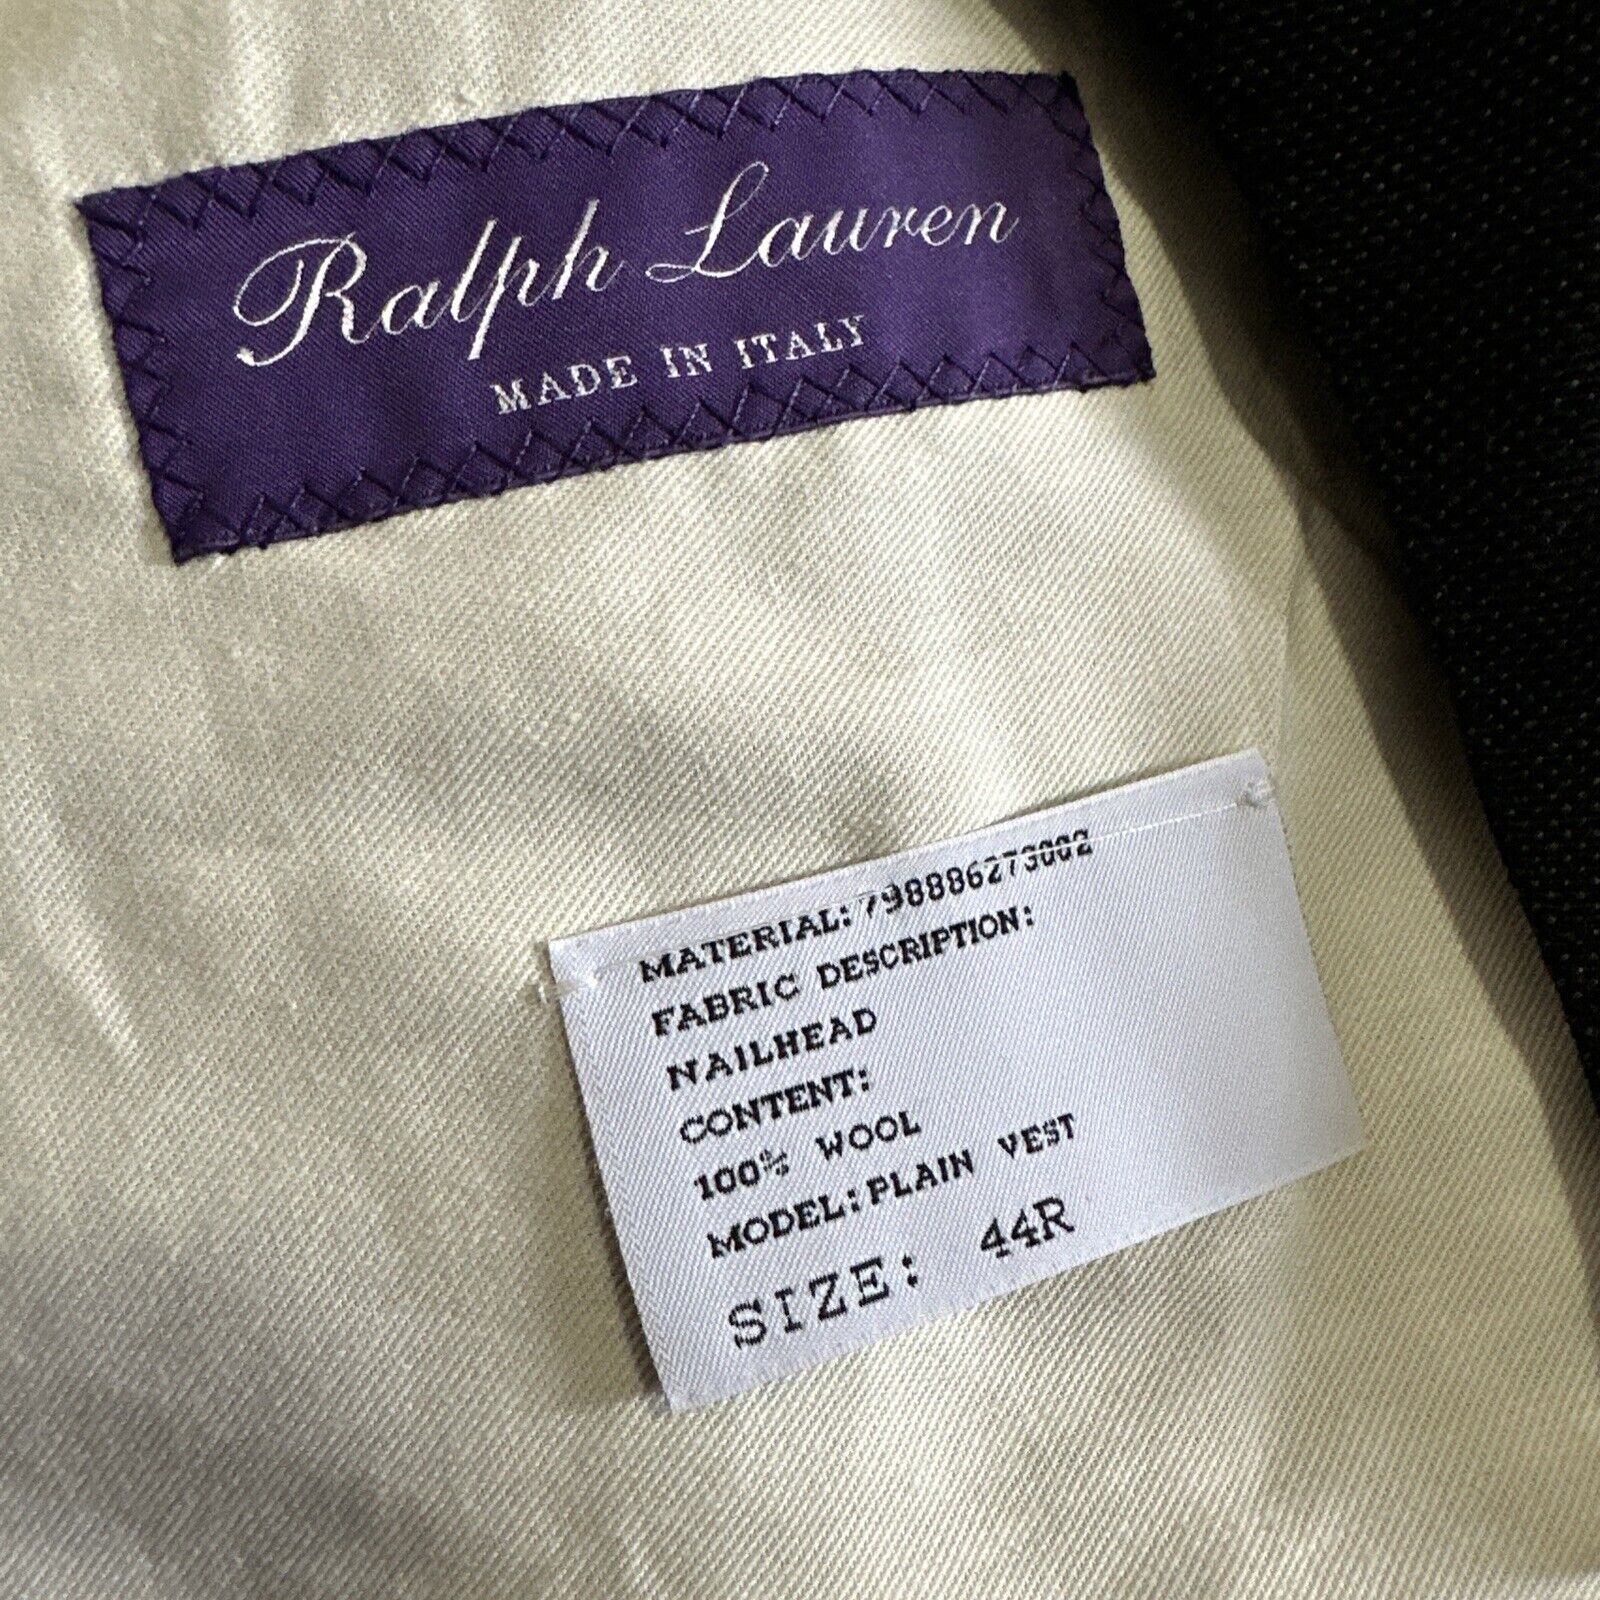 Новый мужской жилет Ralph Lauren Purple Label стоимостью 995 долларов DK Grey 44R US/54R EU Италия